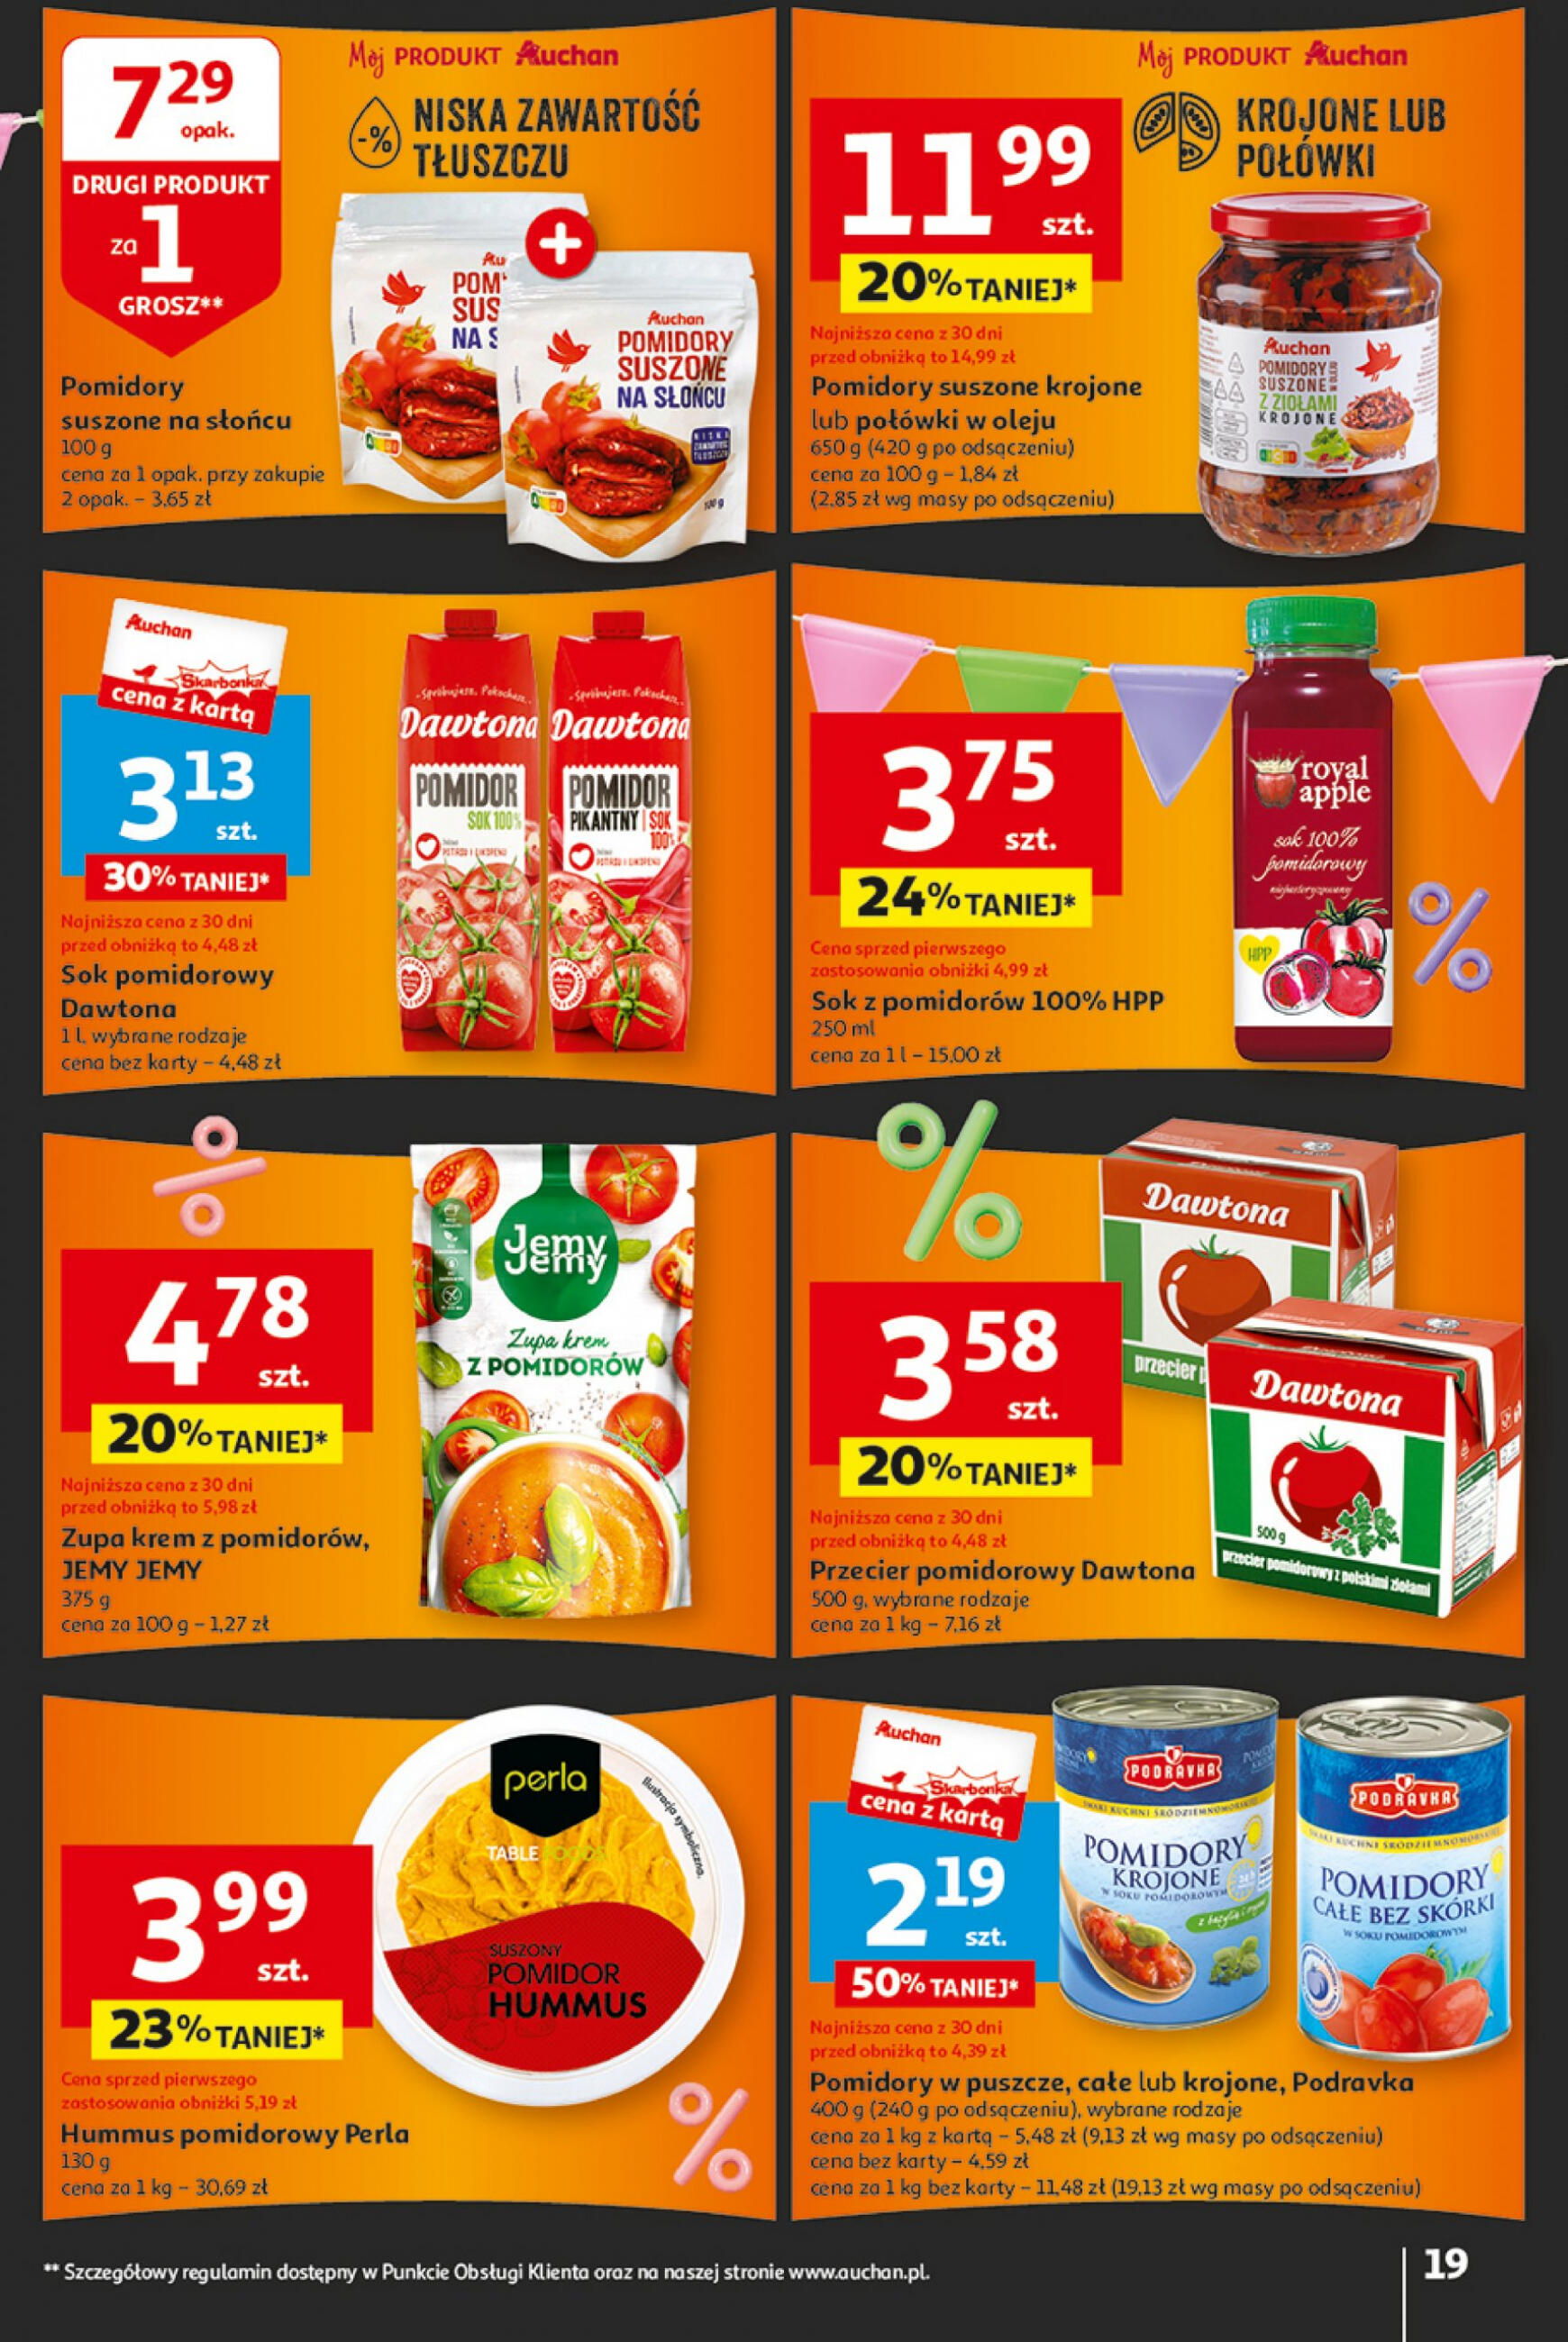 auchan - Hipermarket Auchan - Gazetka Jeszcze taniej na urodziny gazetka aktualna ważna od 25.04. - 30.04. - page: 19